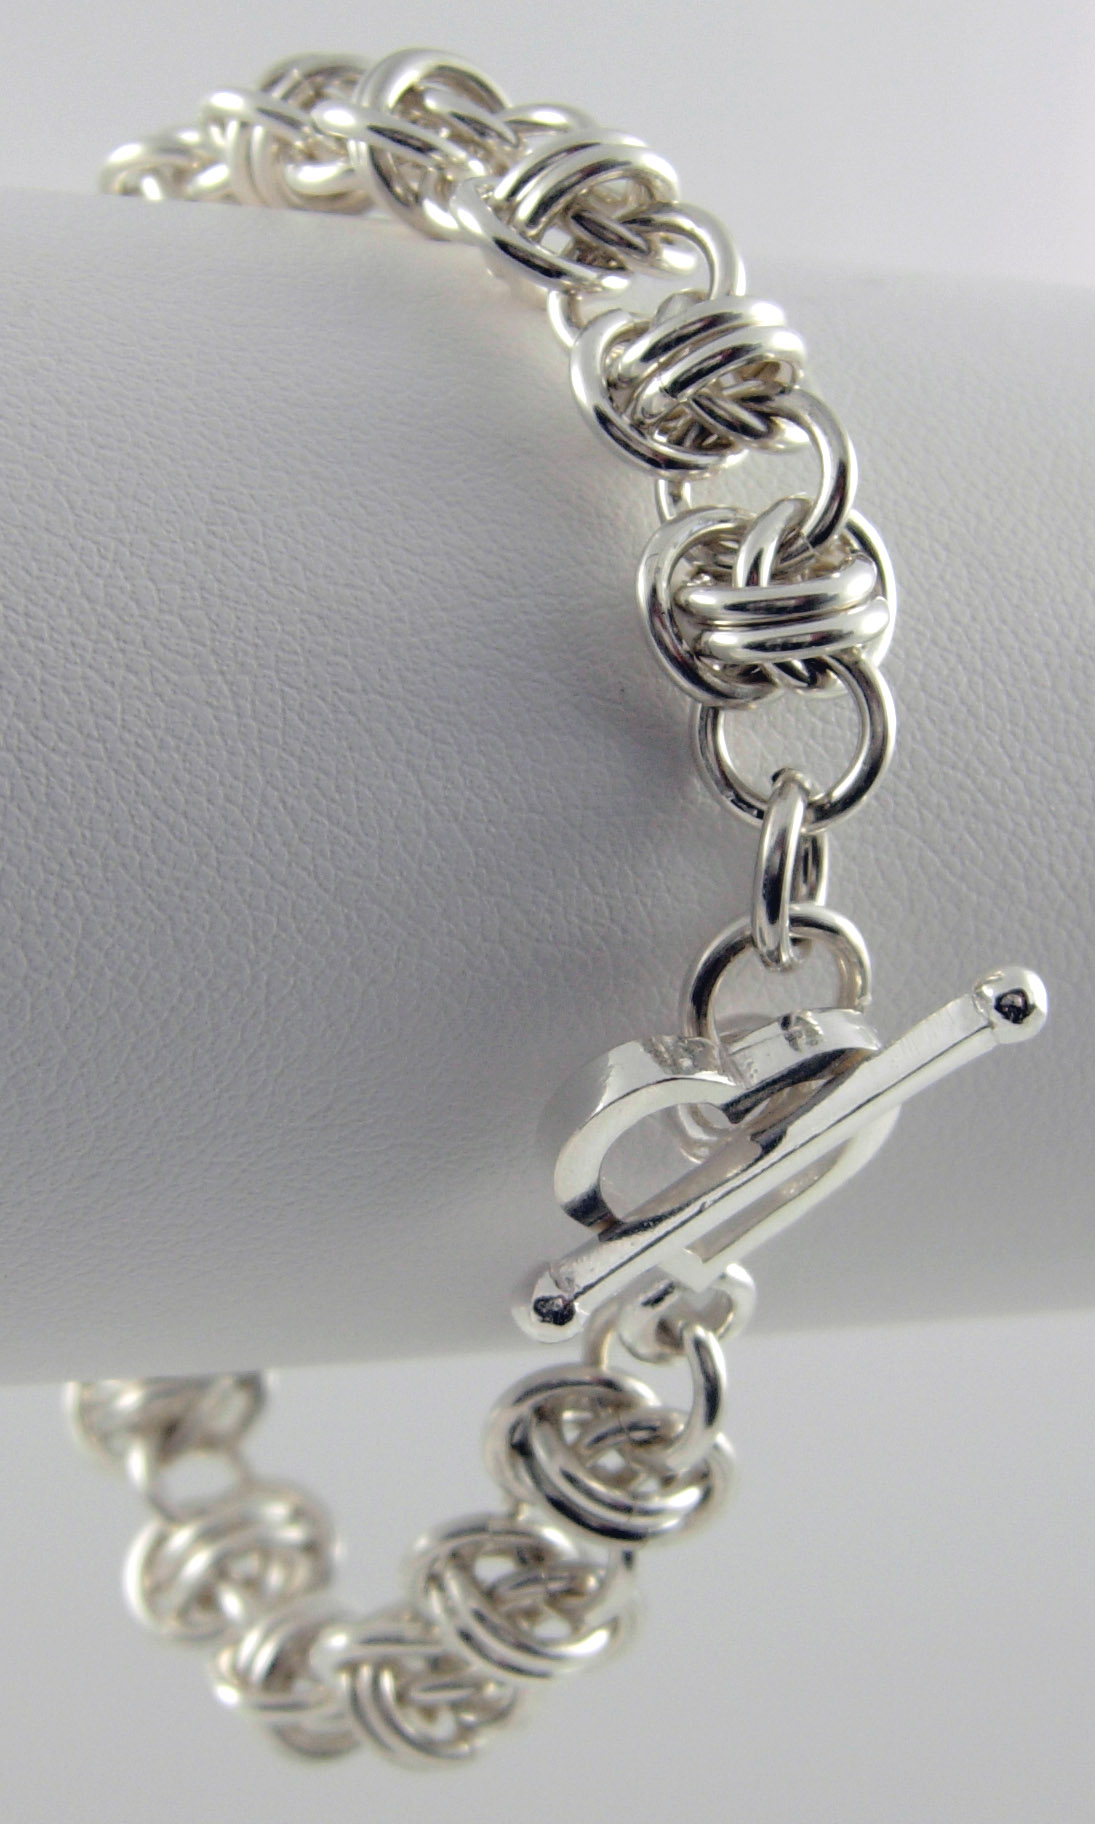 Barrel Weave Bracelet, a Free Wire Jewelry Pattern by Marilyn Gardiner ...